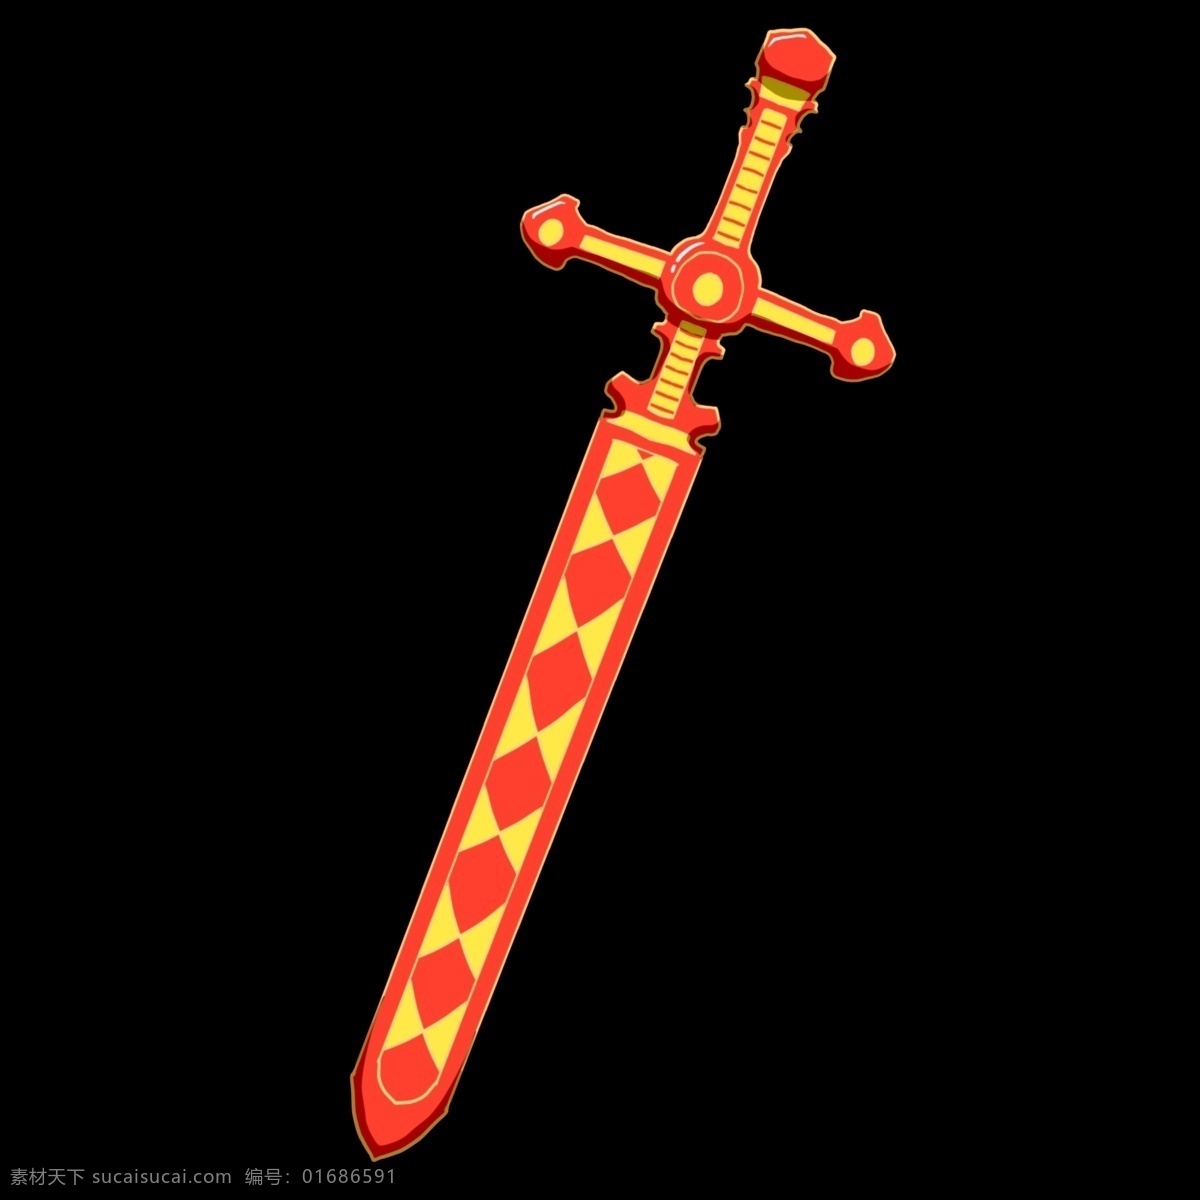 绿色 宝剑 装饰 插画 绿色的宝剑 锋利的宝剑 漂亮的宝剑 武器宝剑 卡通宝剑 创意宝剑 精美宝剑